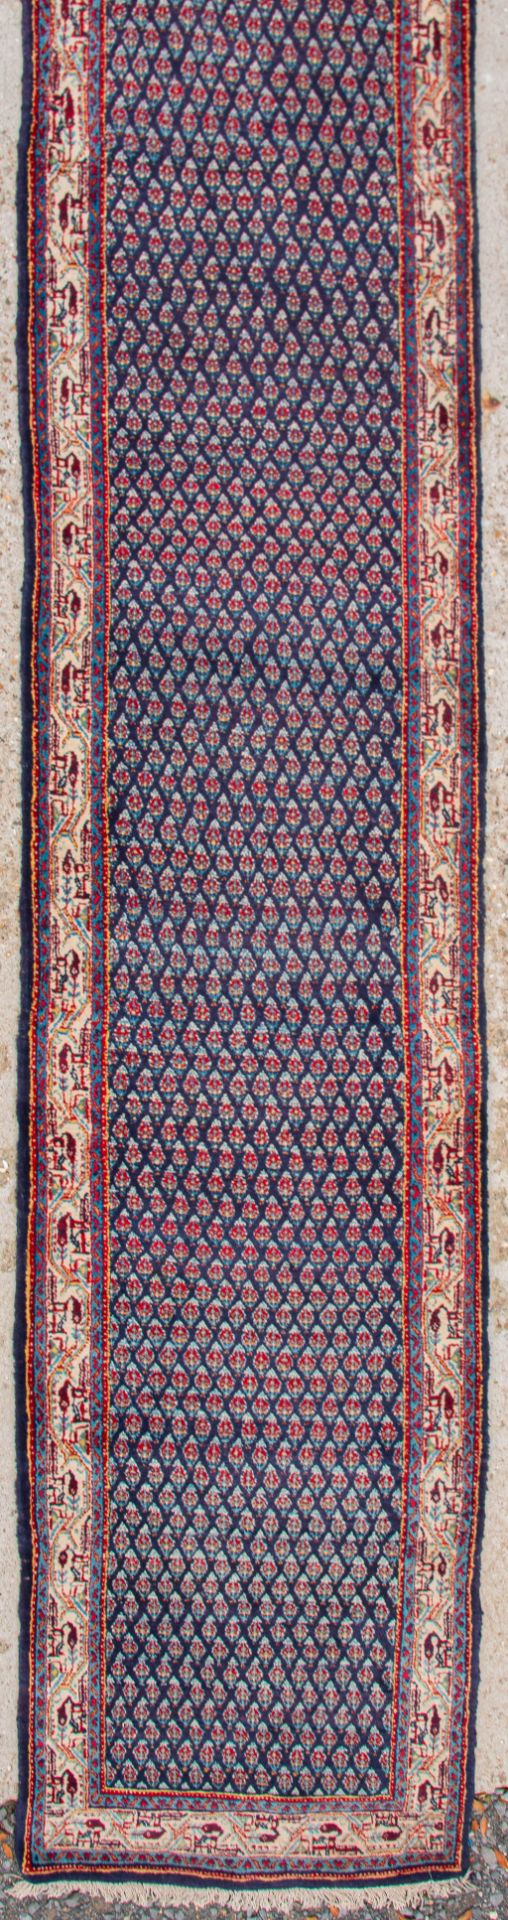 An Oriental hand-made runner carpet. Hamadan. (623 x 80 cm) - Image 5 of 7